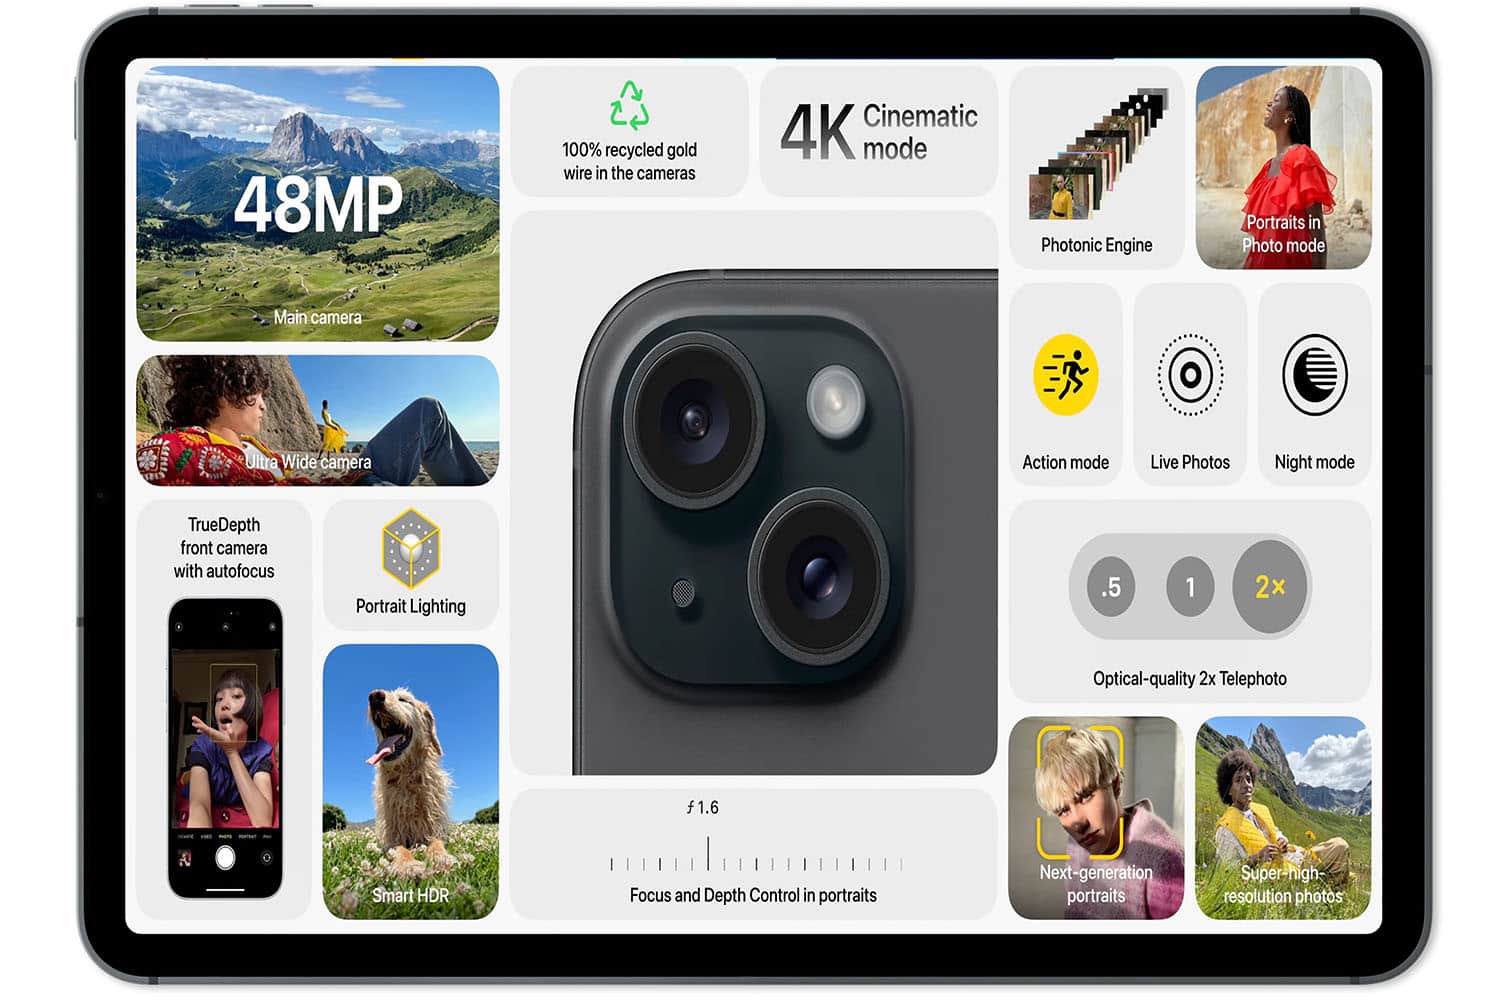 Apple kündigt iPhone 15 und iPhone 15 Plus mit USB-C-Anschluss, Dynamic Island und mehr an